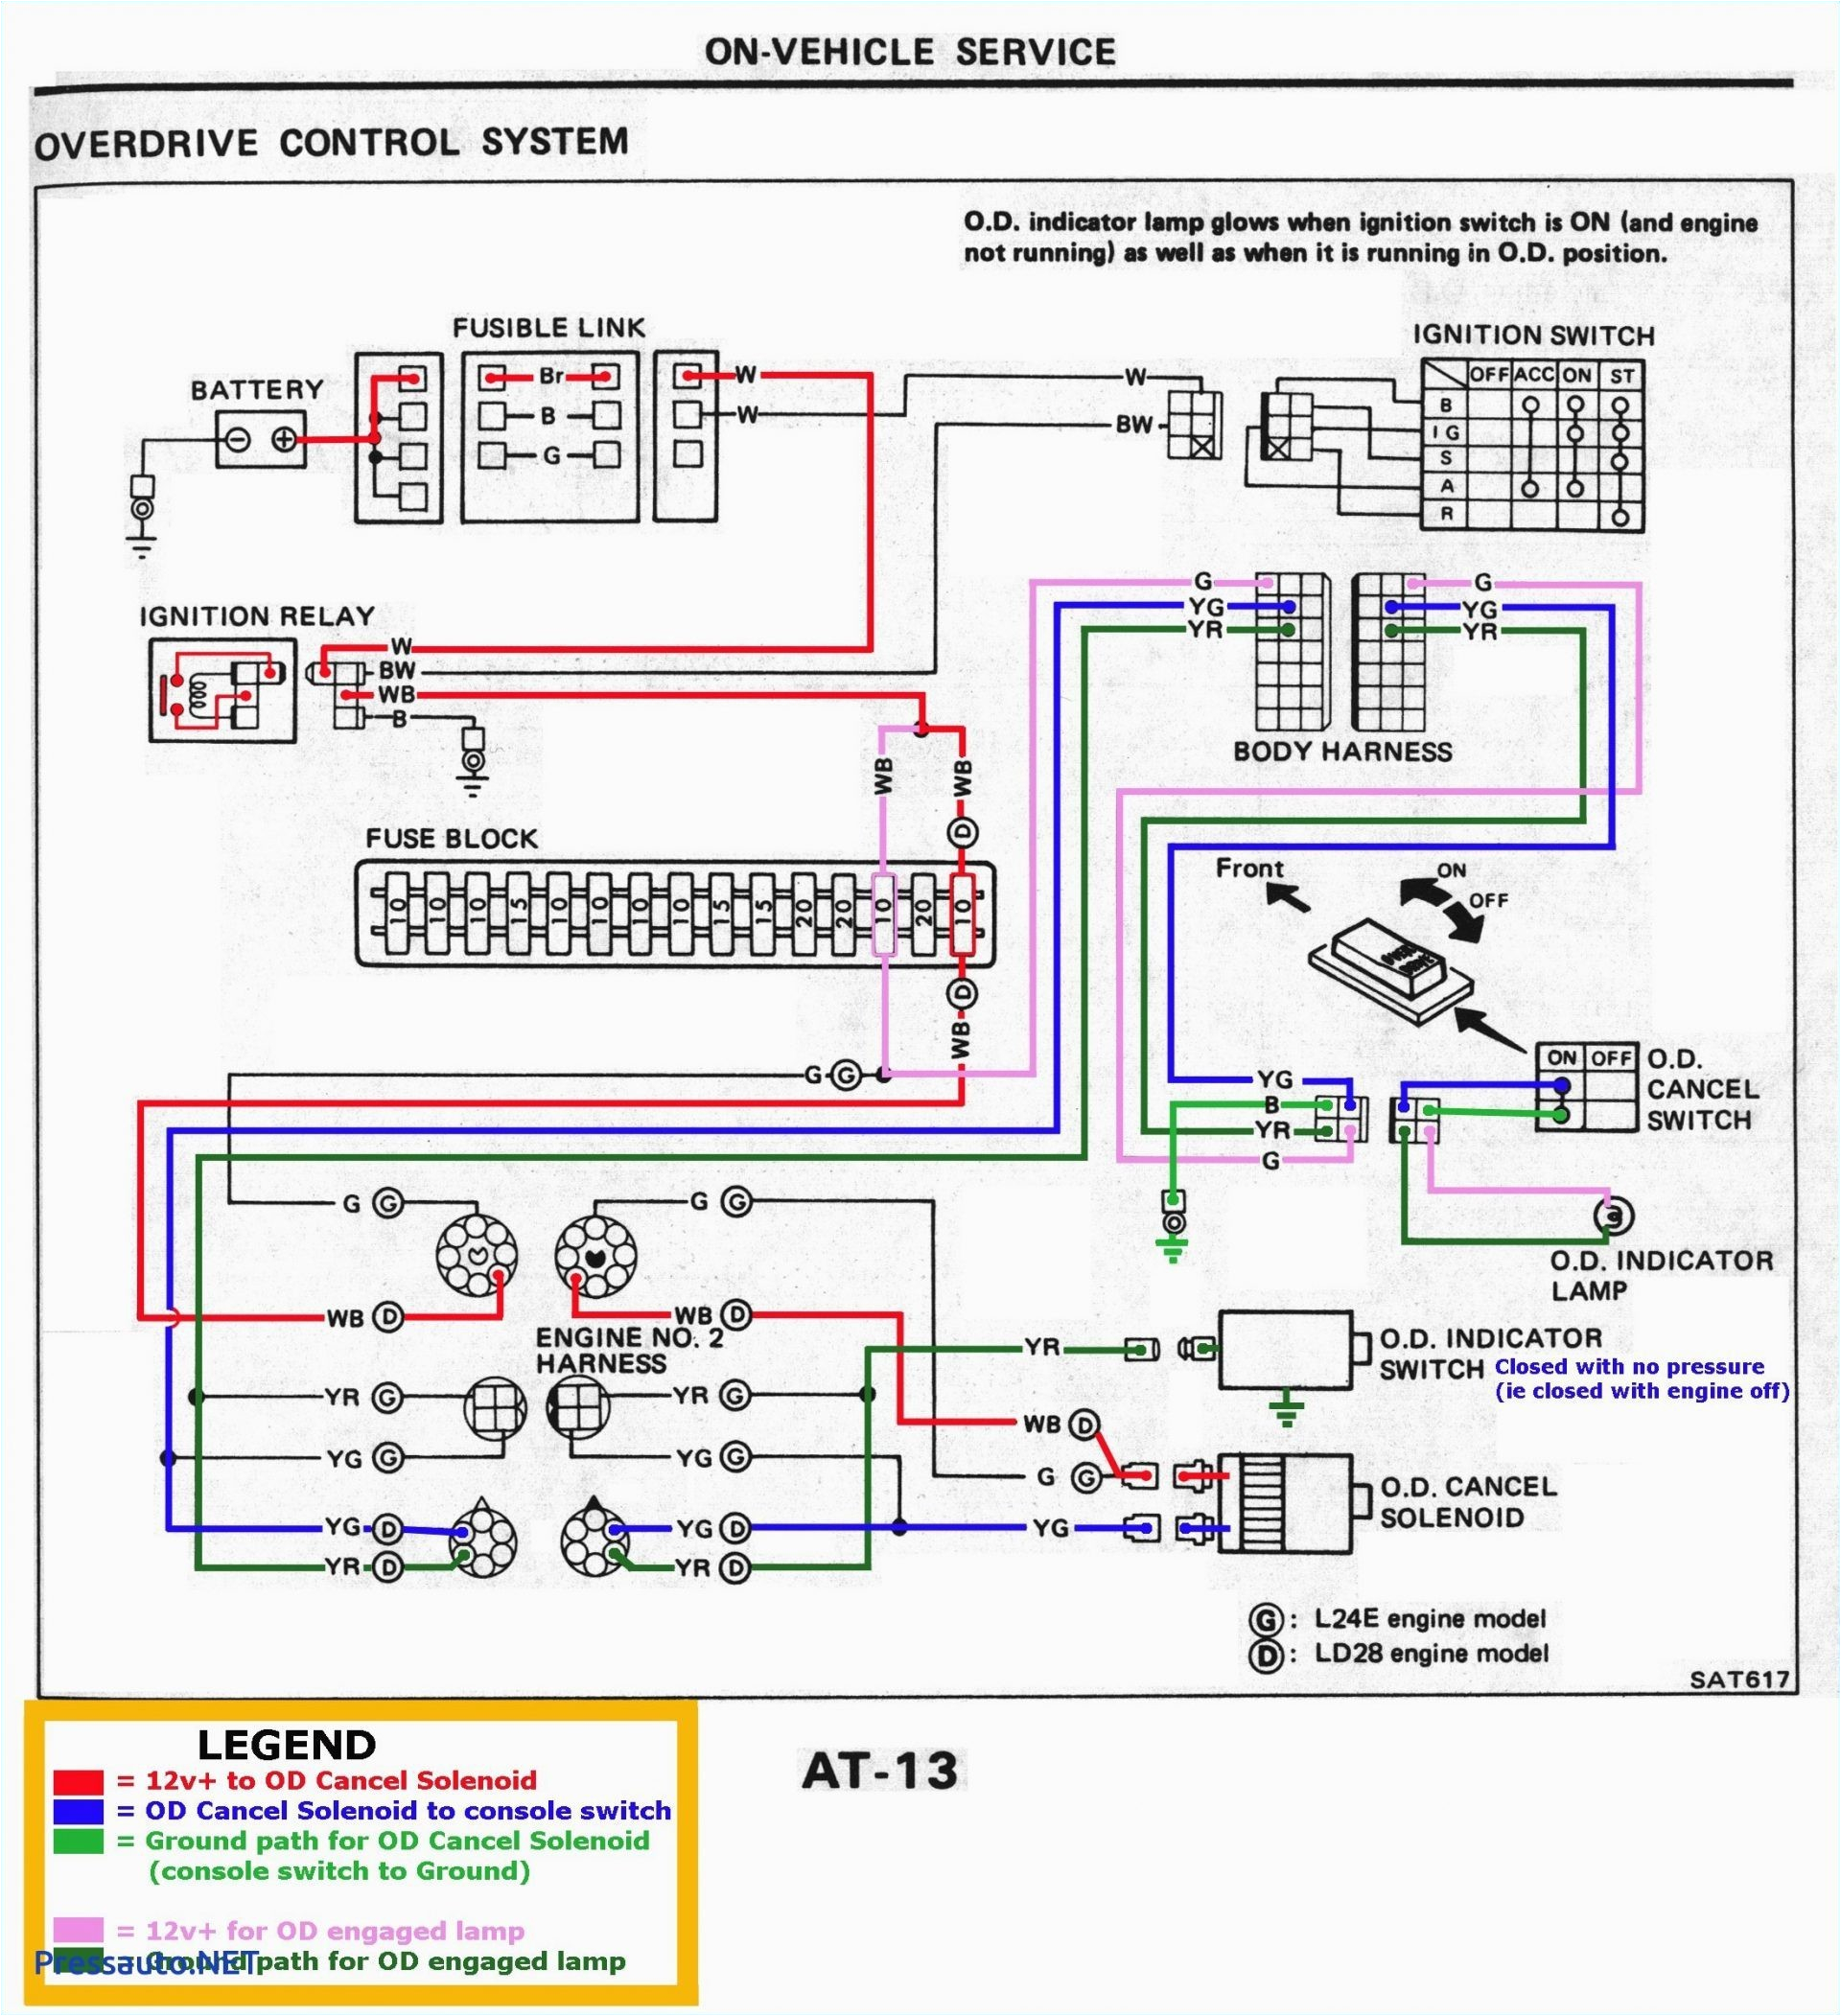 2000 ford f350 tail light wiring diagram new semi truck tail light wiring diagram schematics wiring data e280a2 of 2000 ford f350 tail light wiring diagram jpg